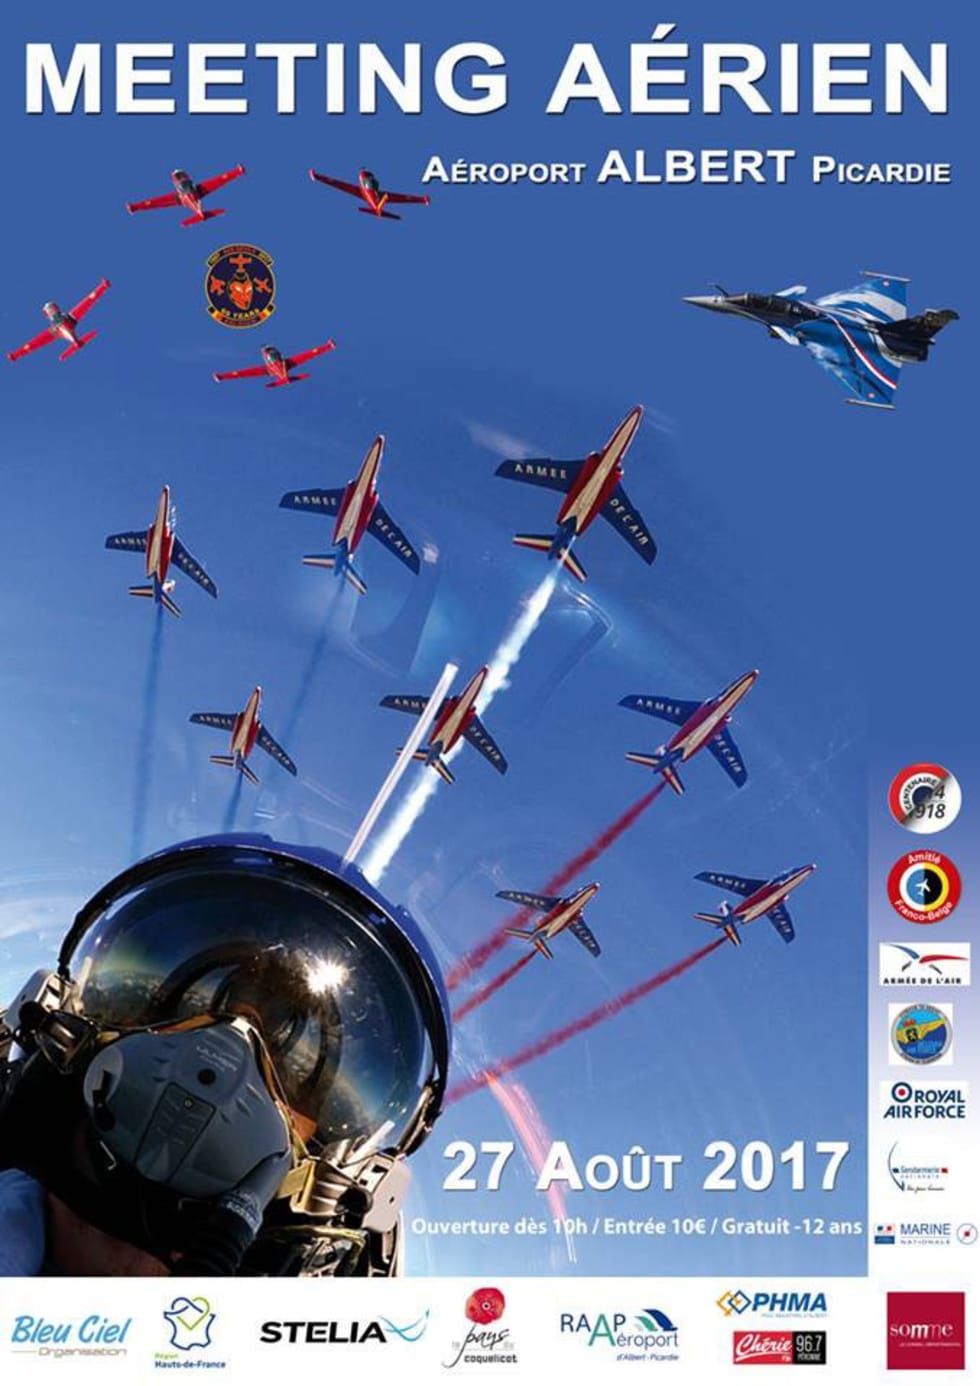 Meeting Aérien International de la Somme - Hauts-de-France 2017